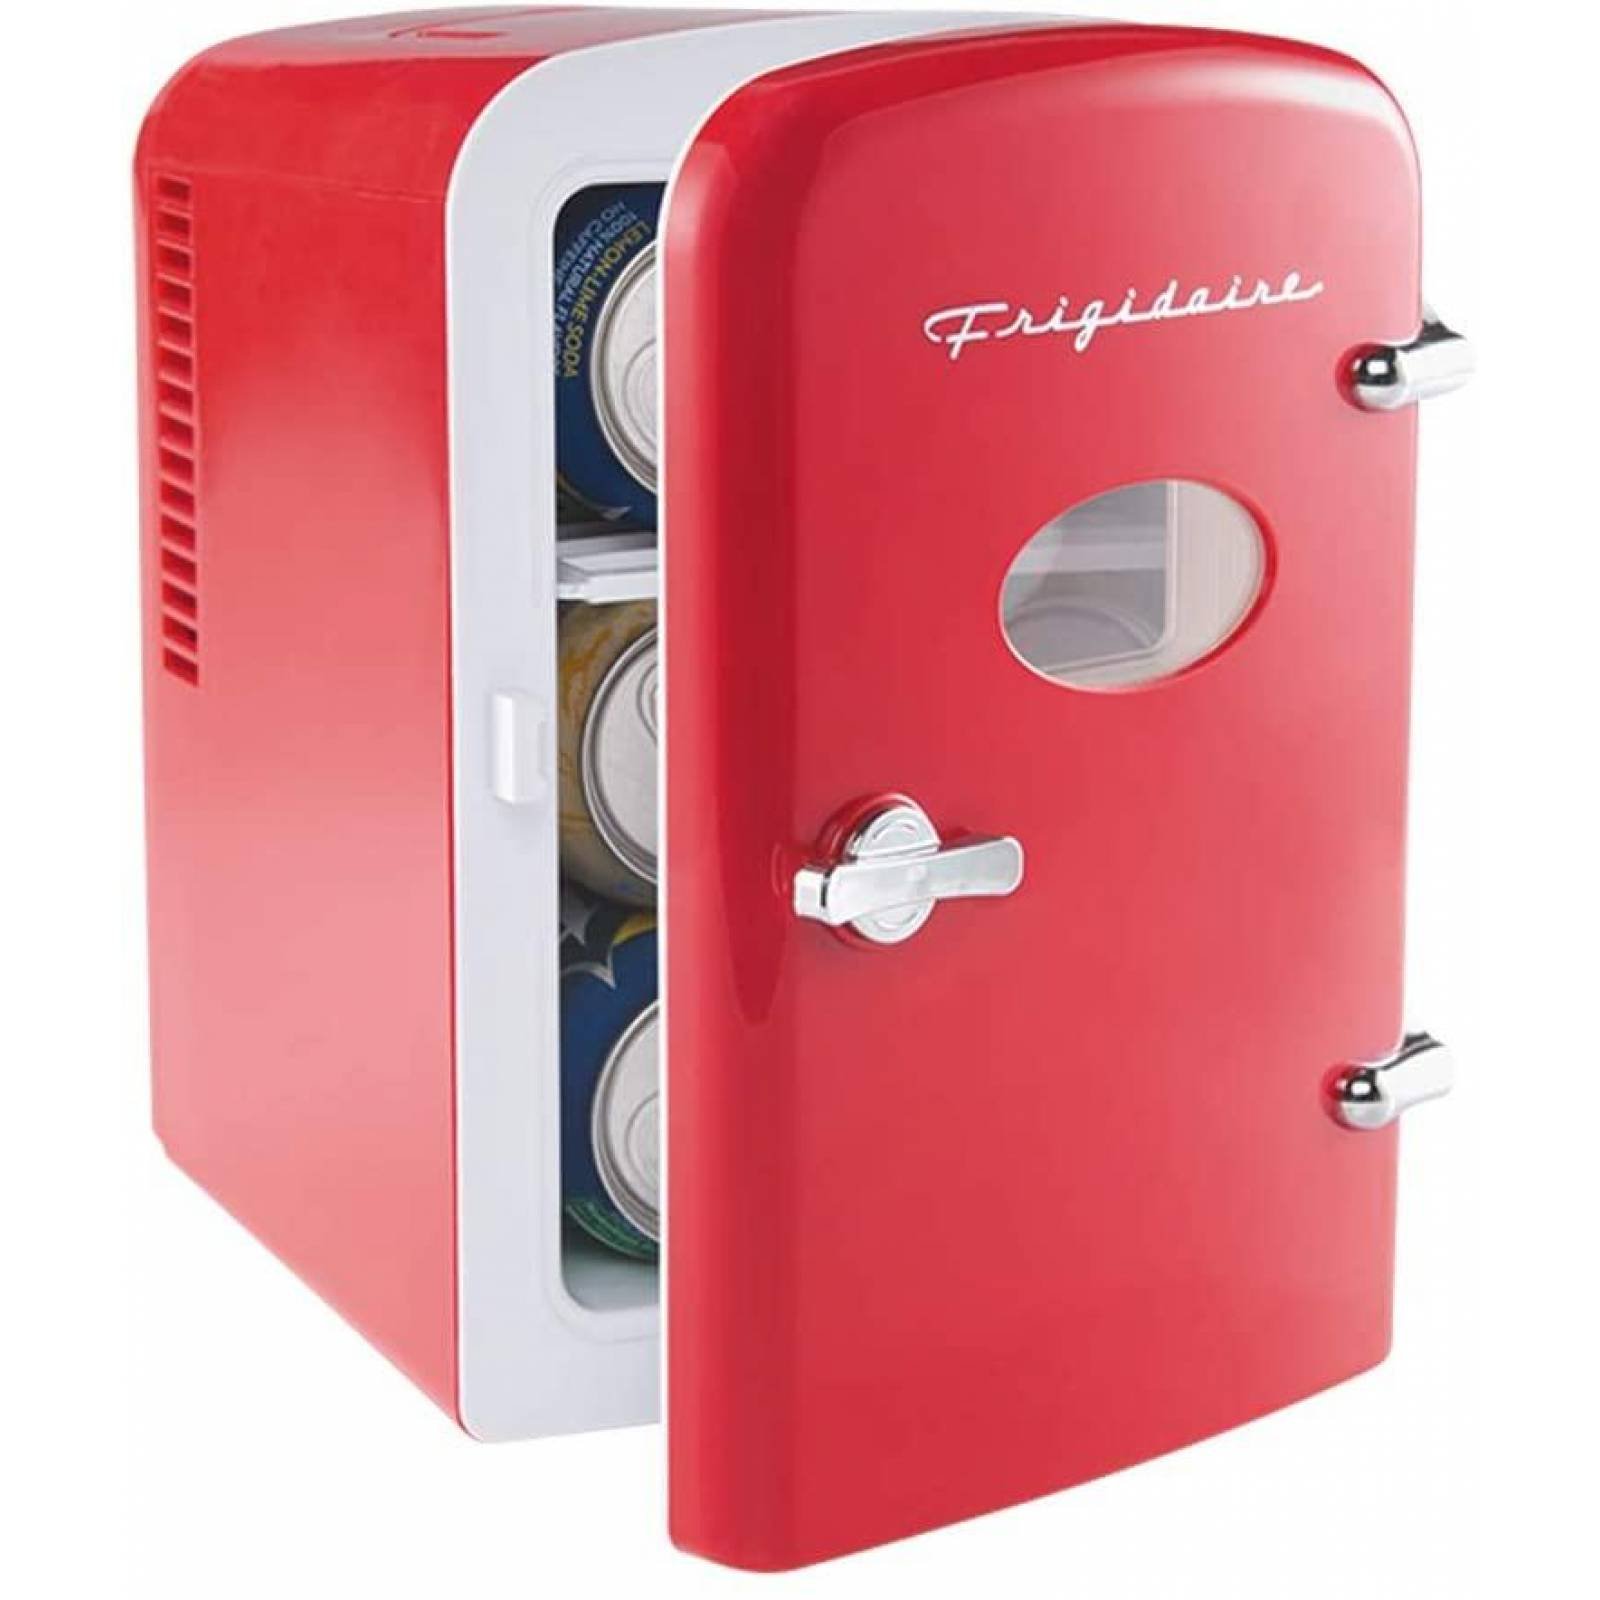 Frigidaire Red EFMIS129- CP4 6 latas Mini refrigerador portátil compacto